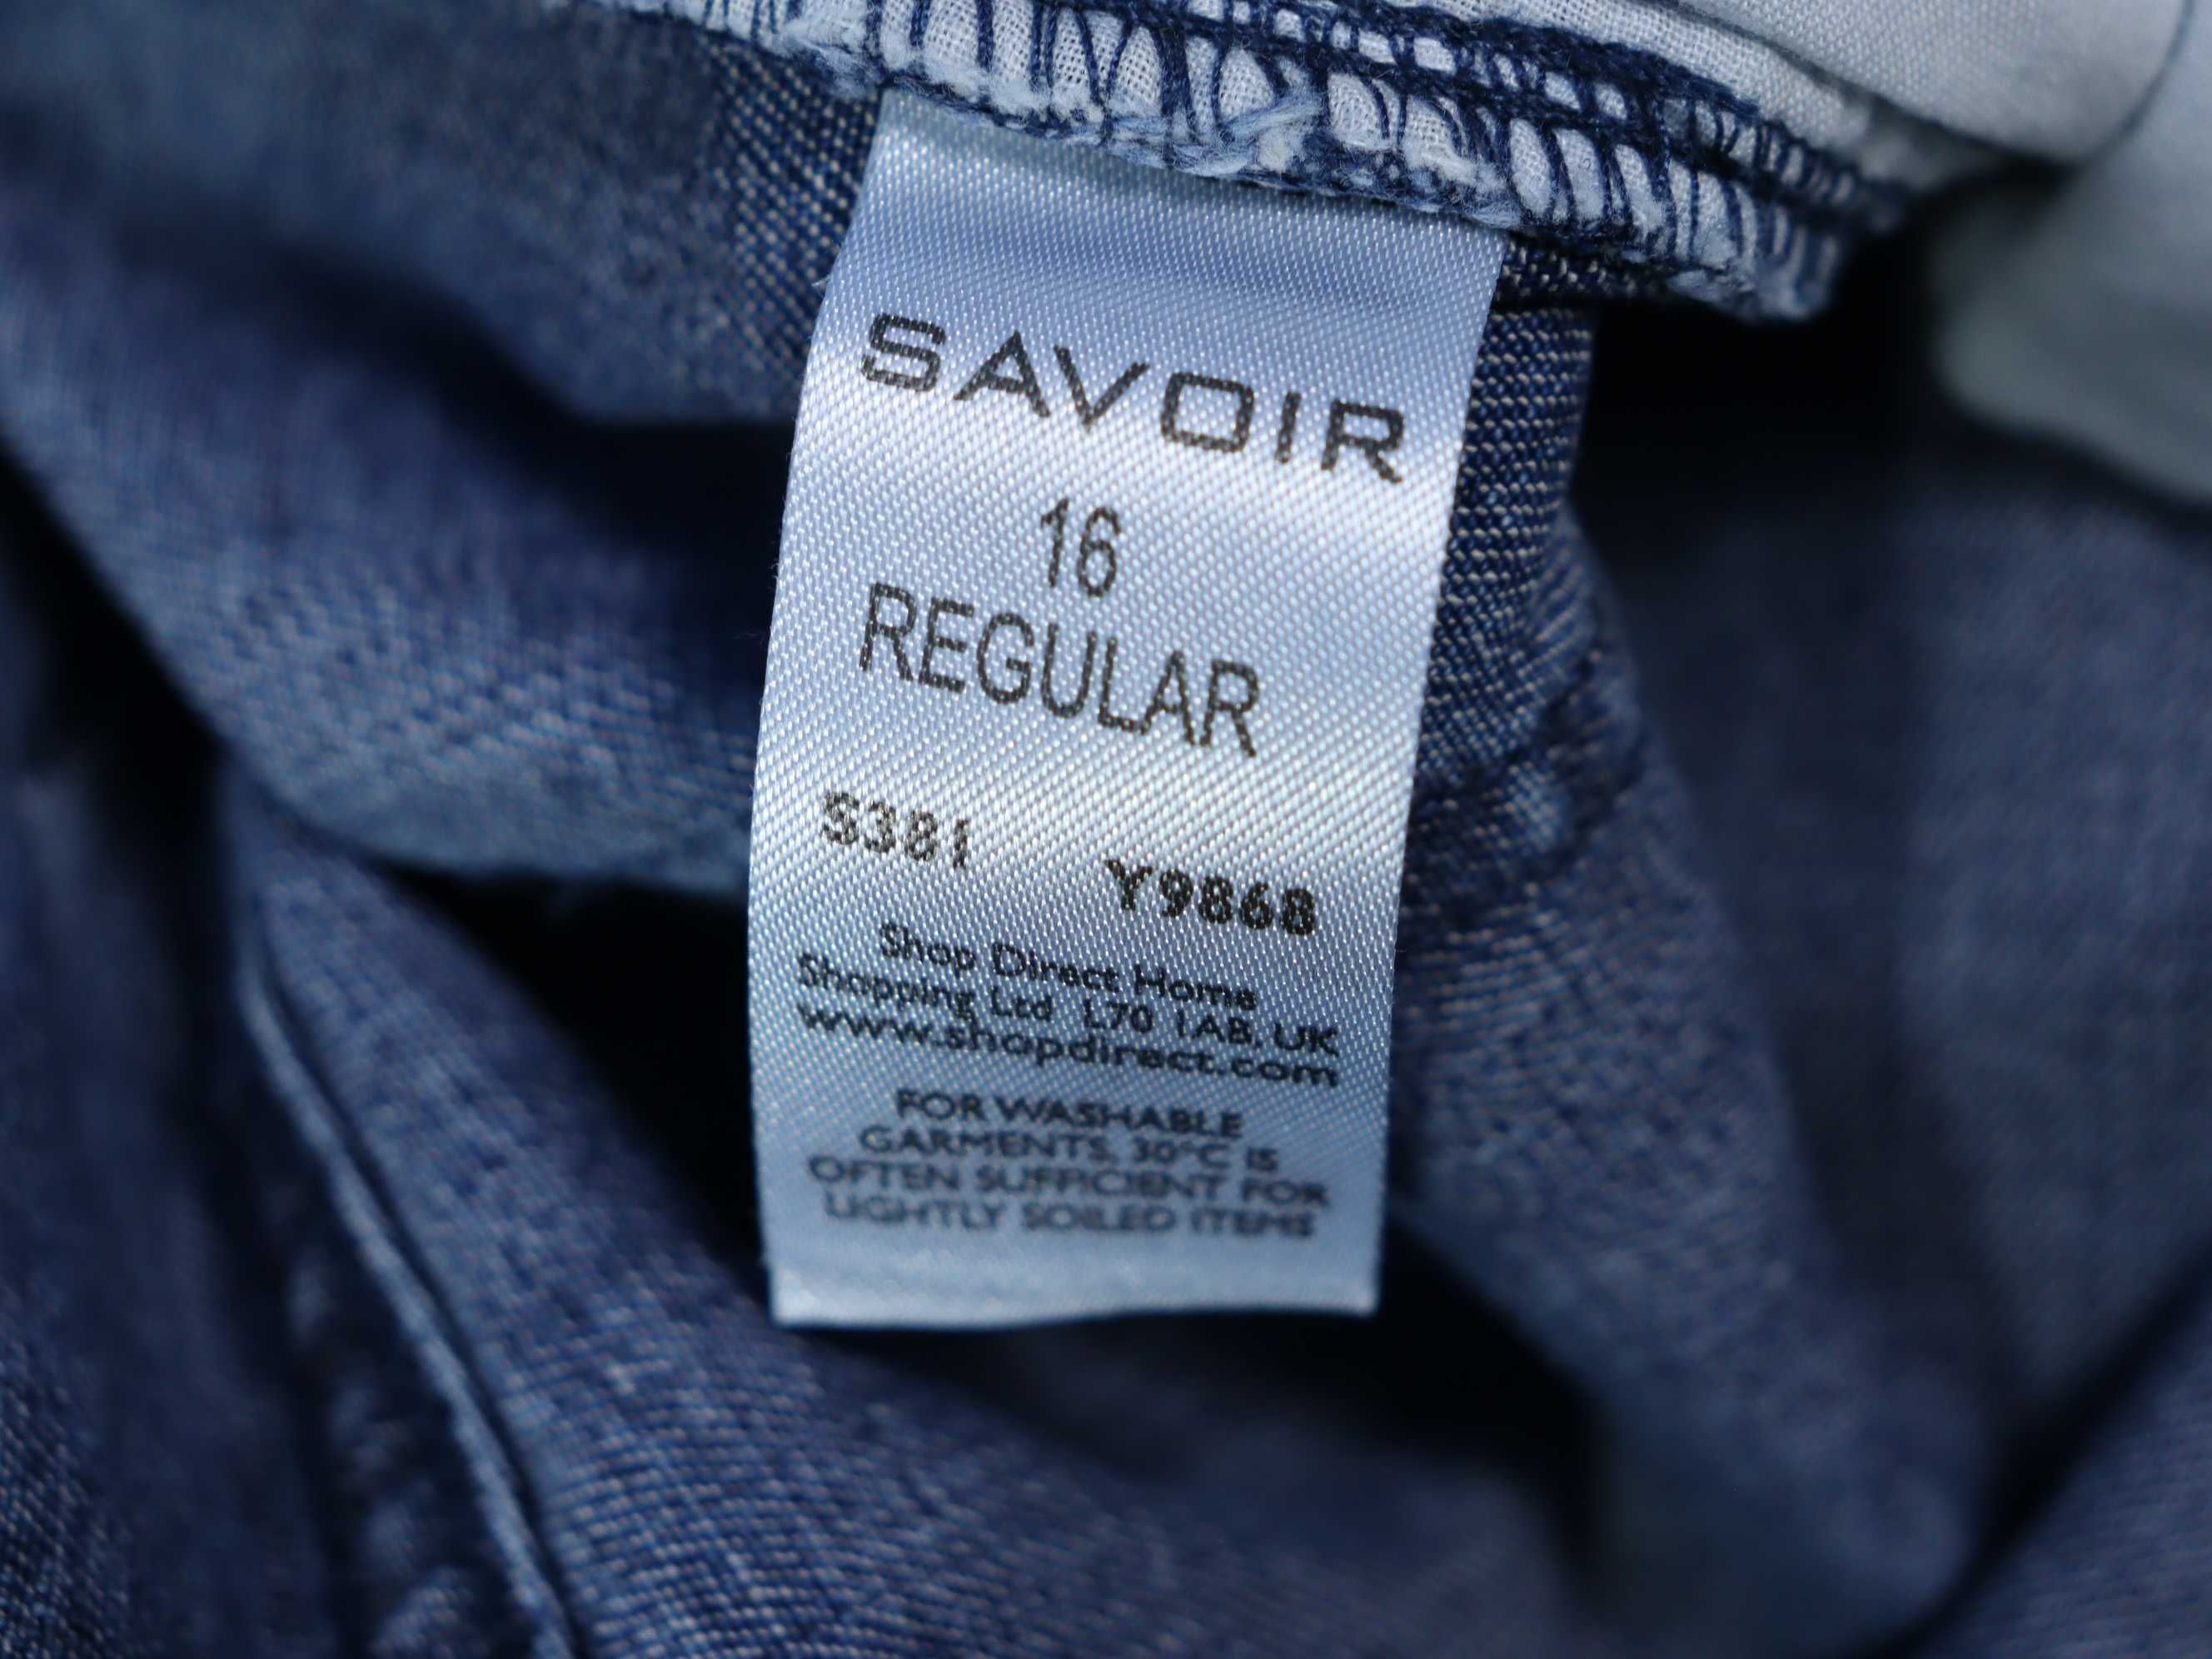 Savoir nowe damskie szerokie spodnie luźne baggy jeansy 16 XXL 44